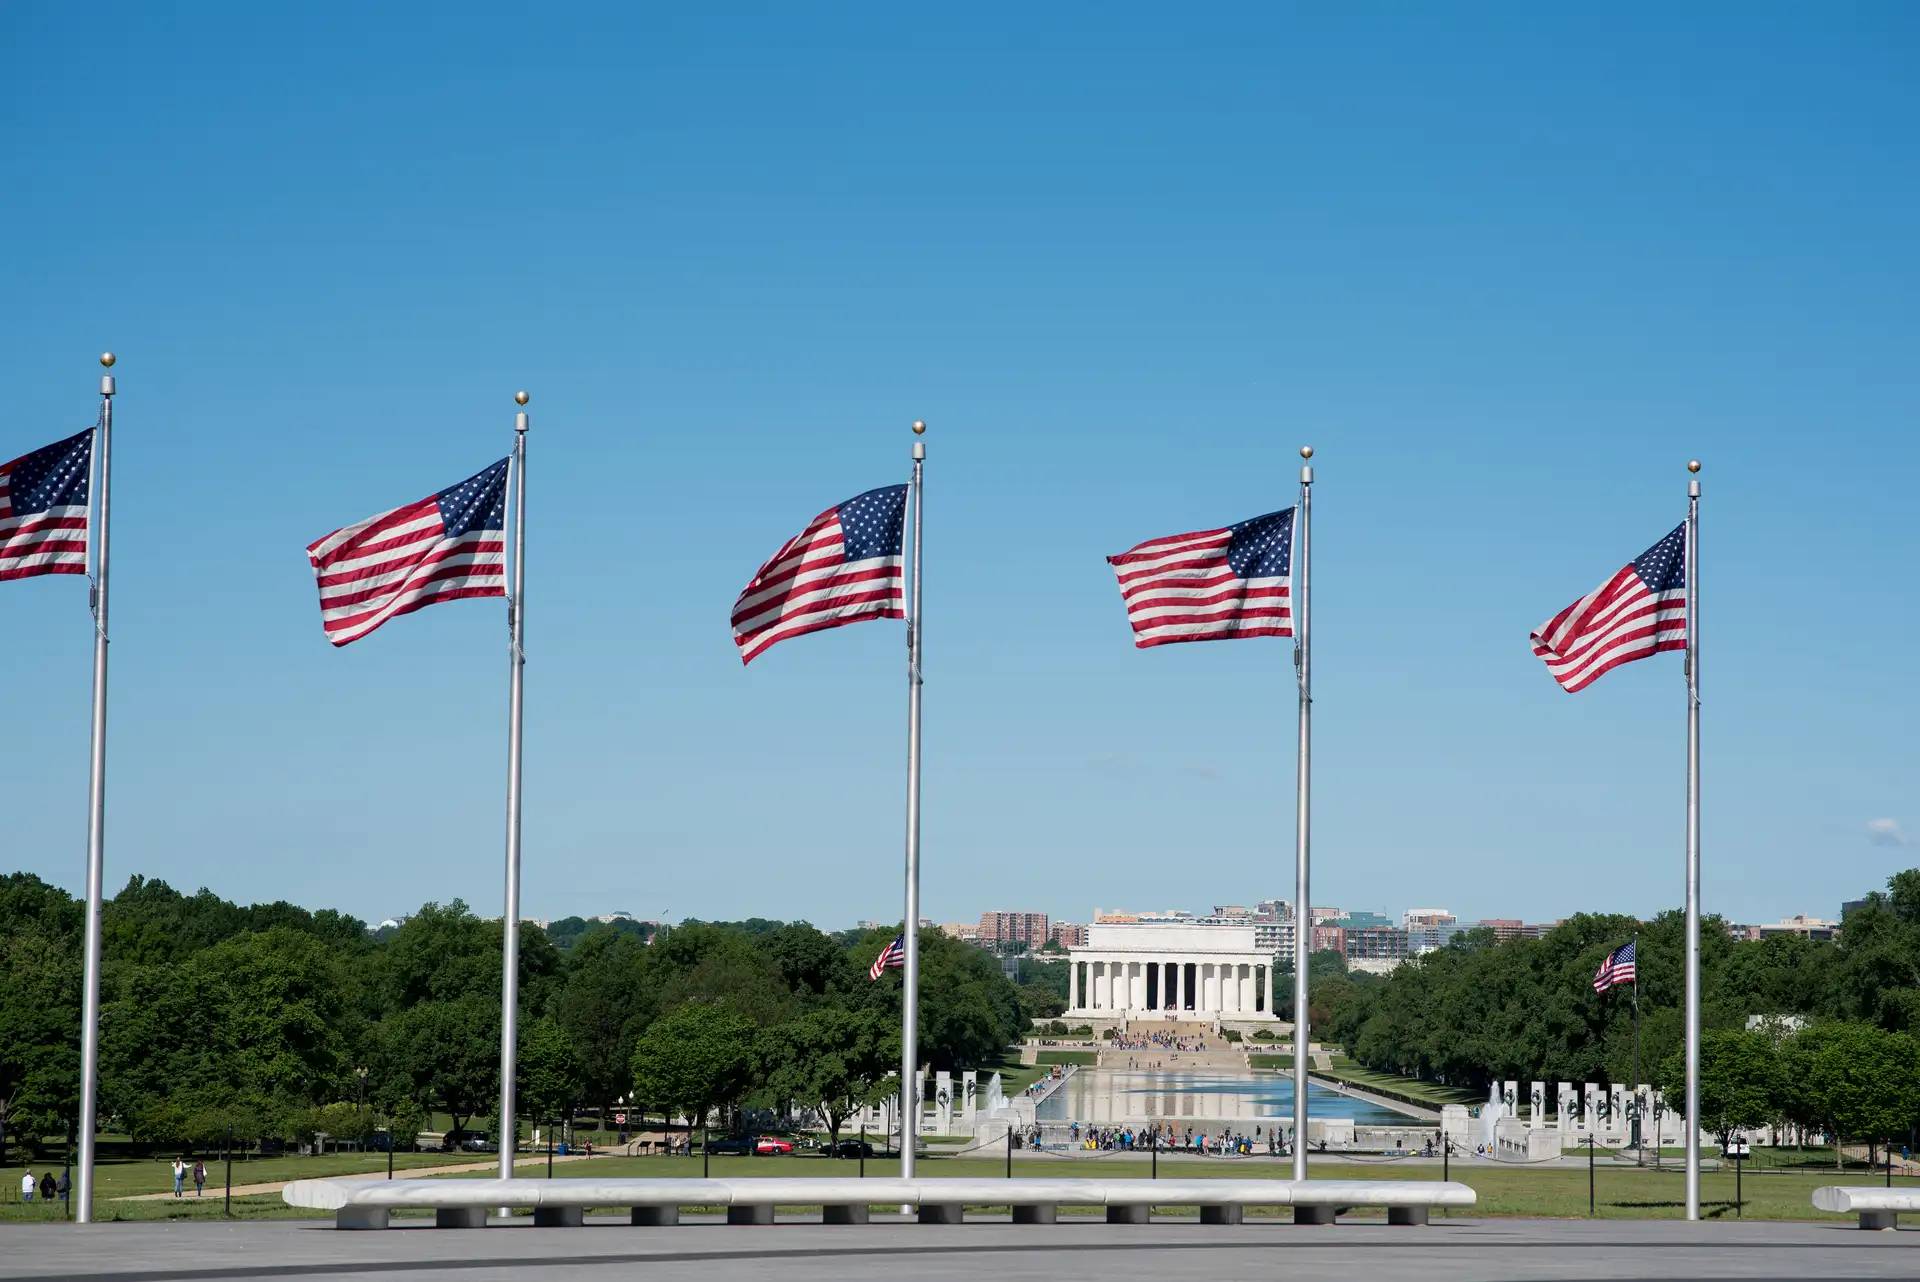 Lincoln memorial washington DC drapeaux américains